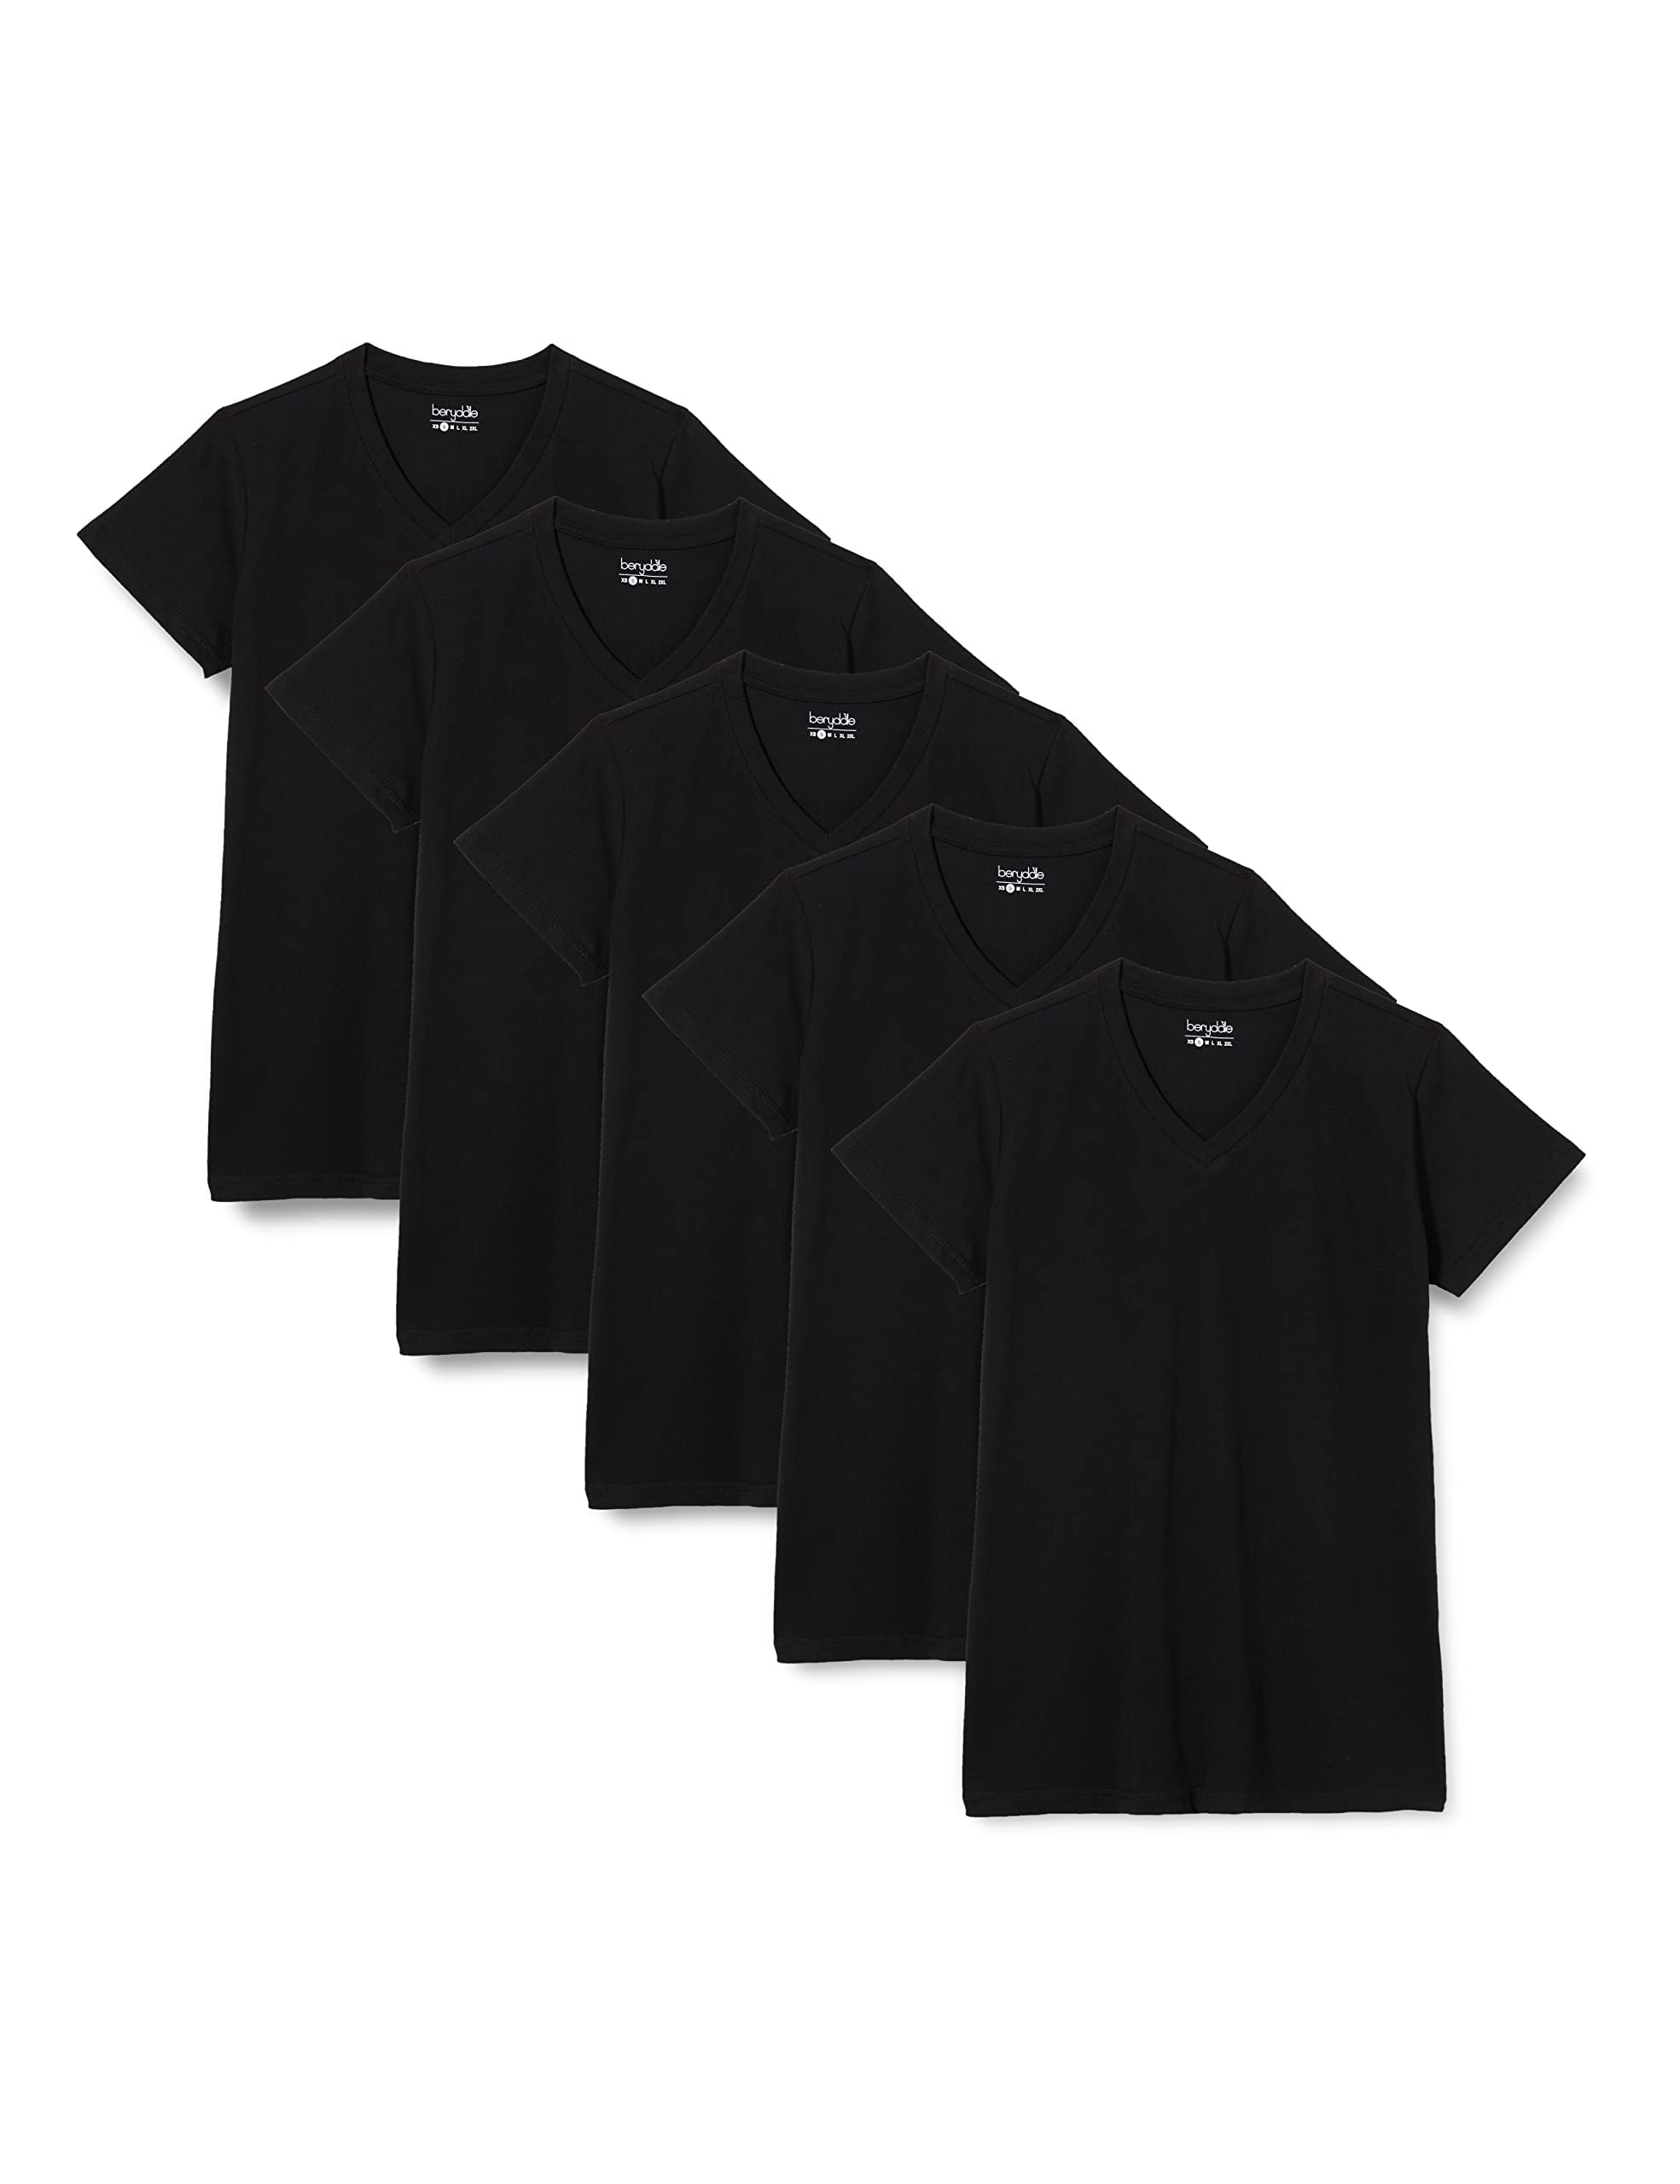 berydale Damen T-Shirt Bd158, Schwarz - 5er Pack, XS